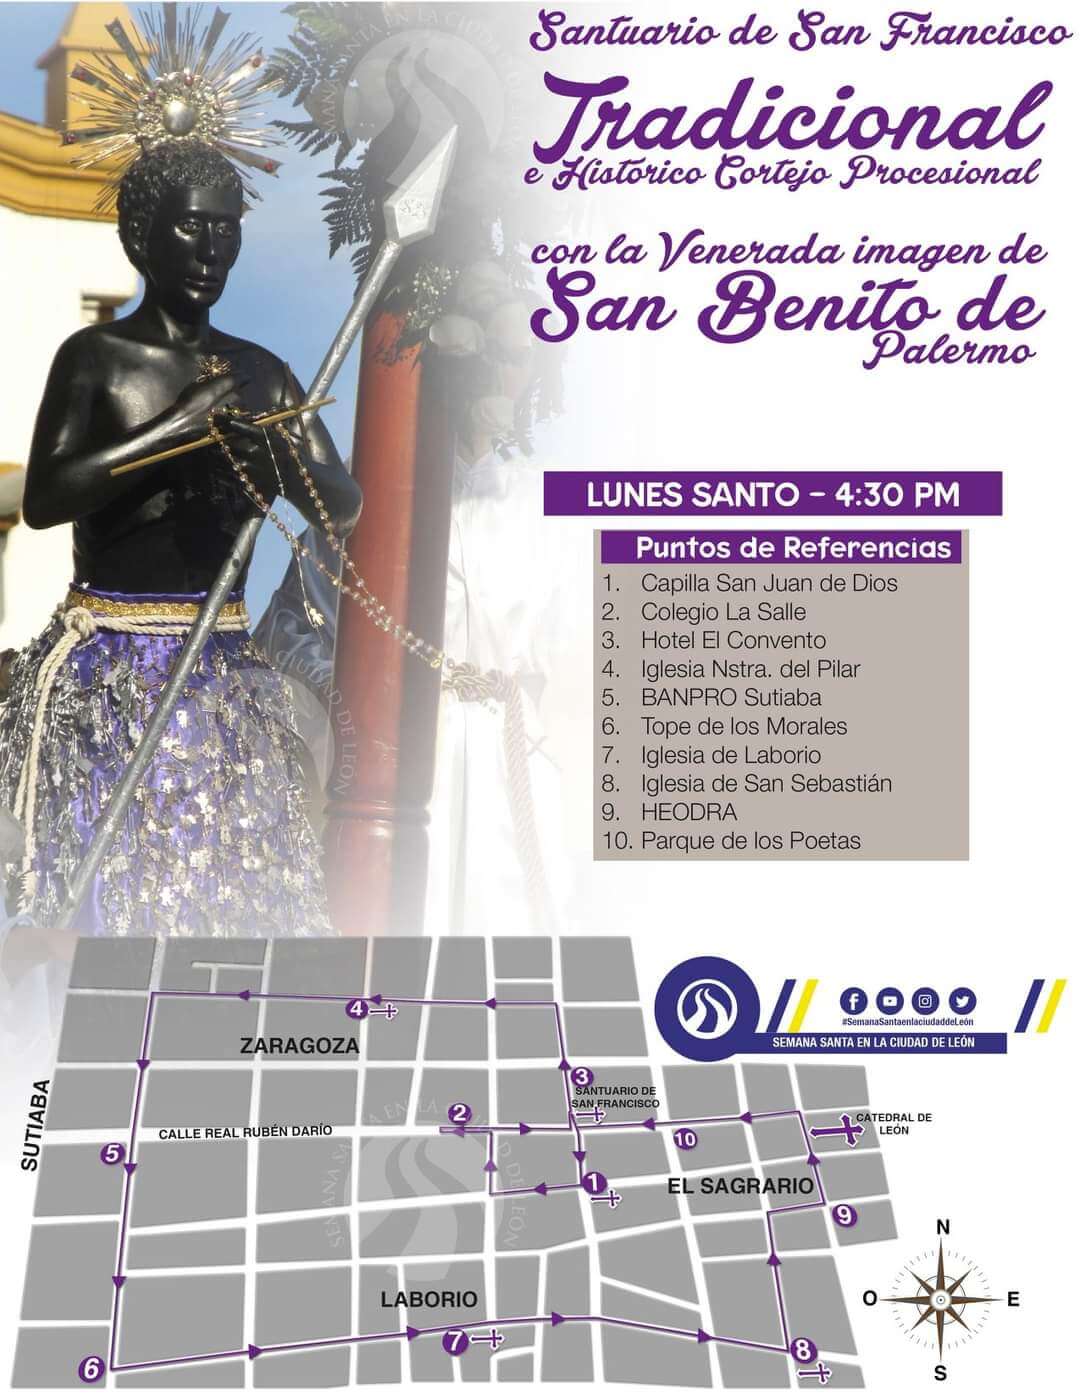 Recorrido del cortejo procesional de San Benito de Palermo en León, Nicaragua 2021